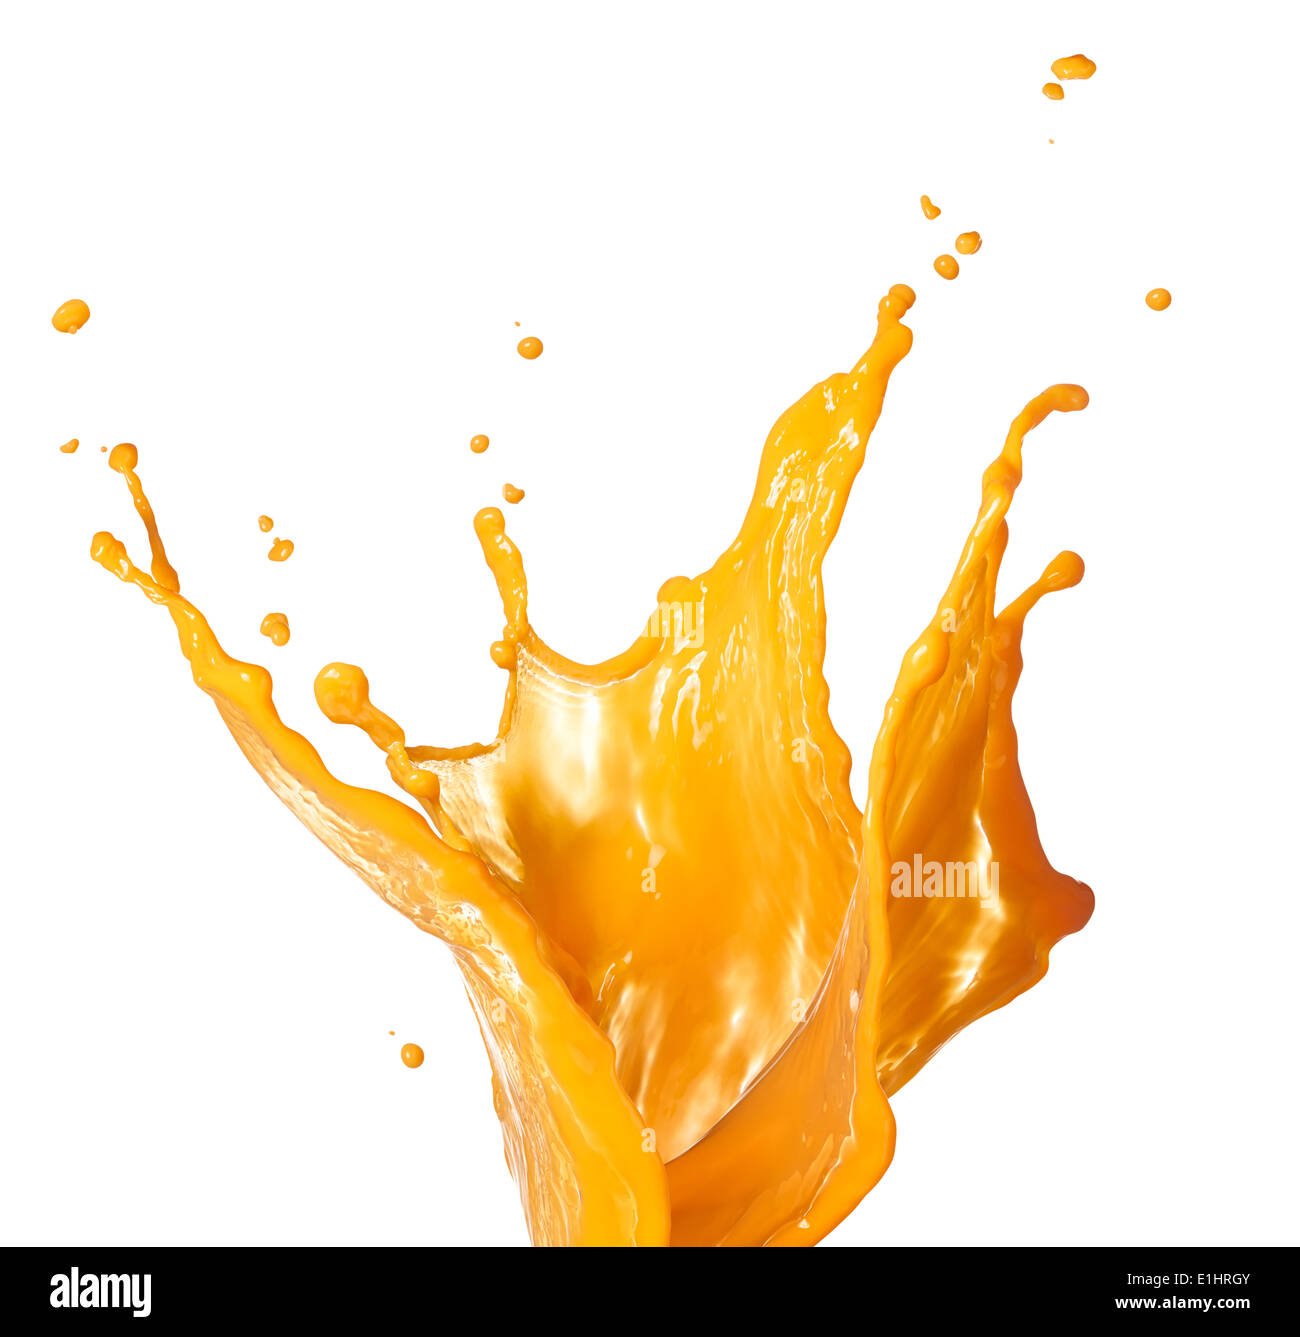 orange juice splash isolated on white background Stock Photo